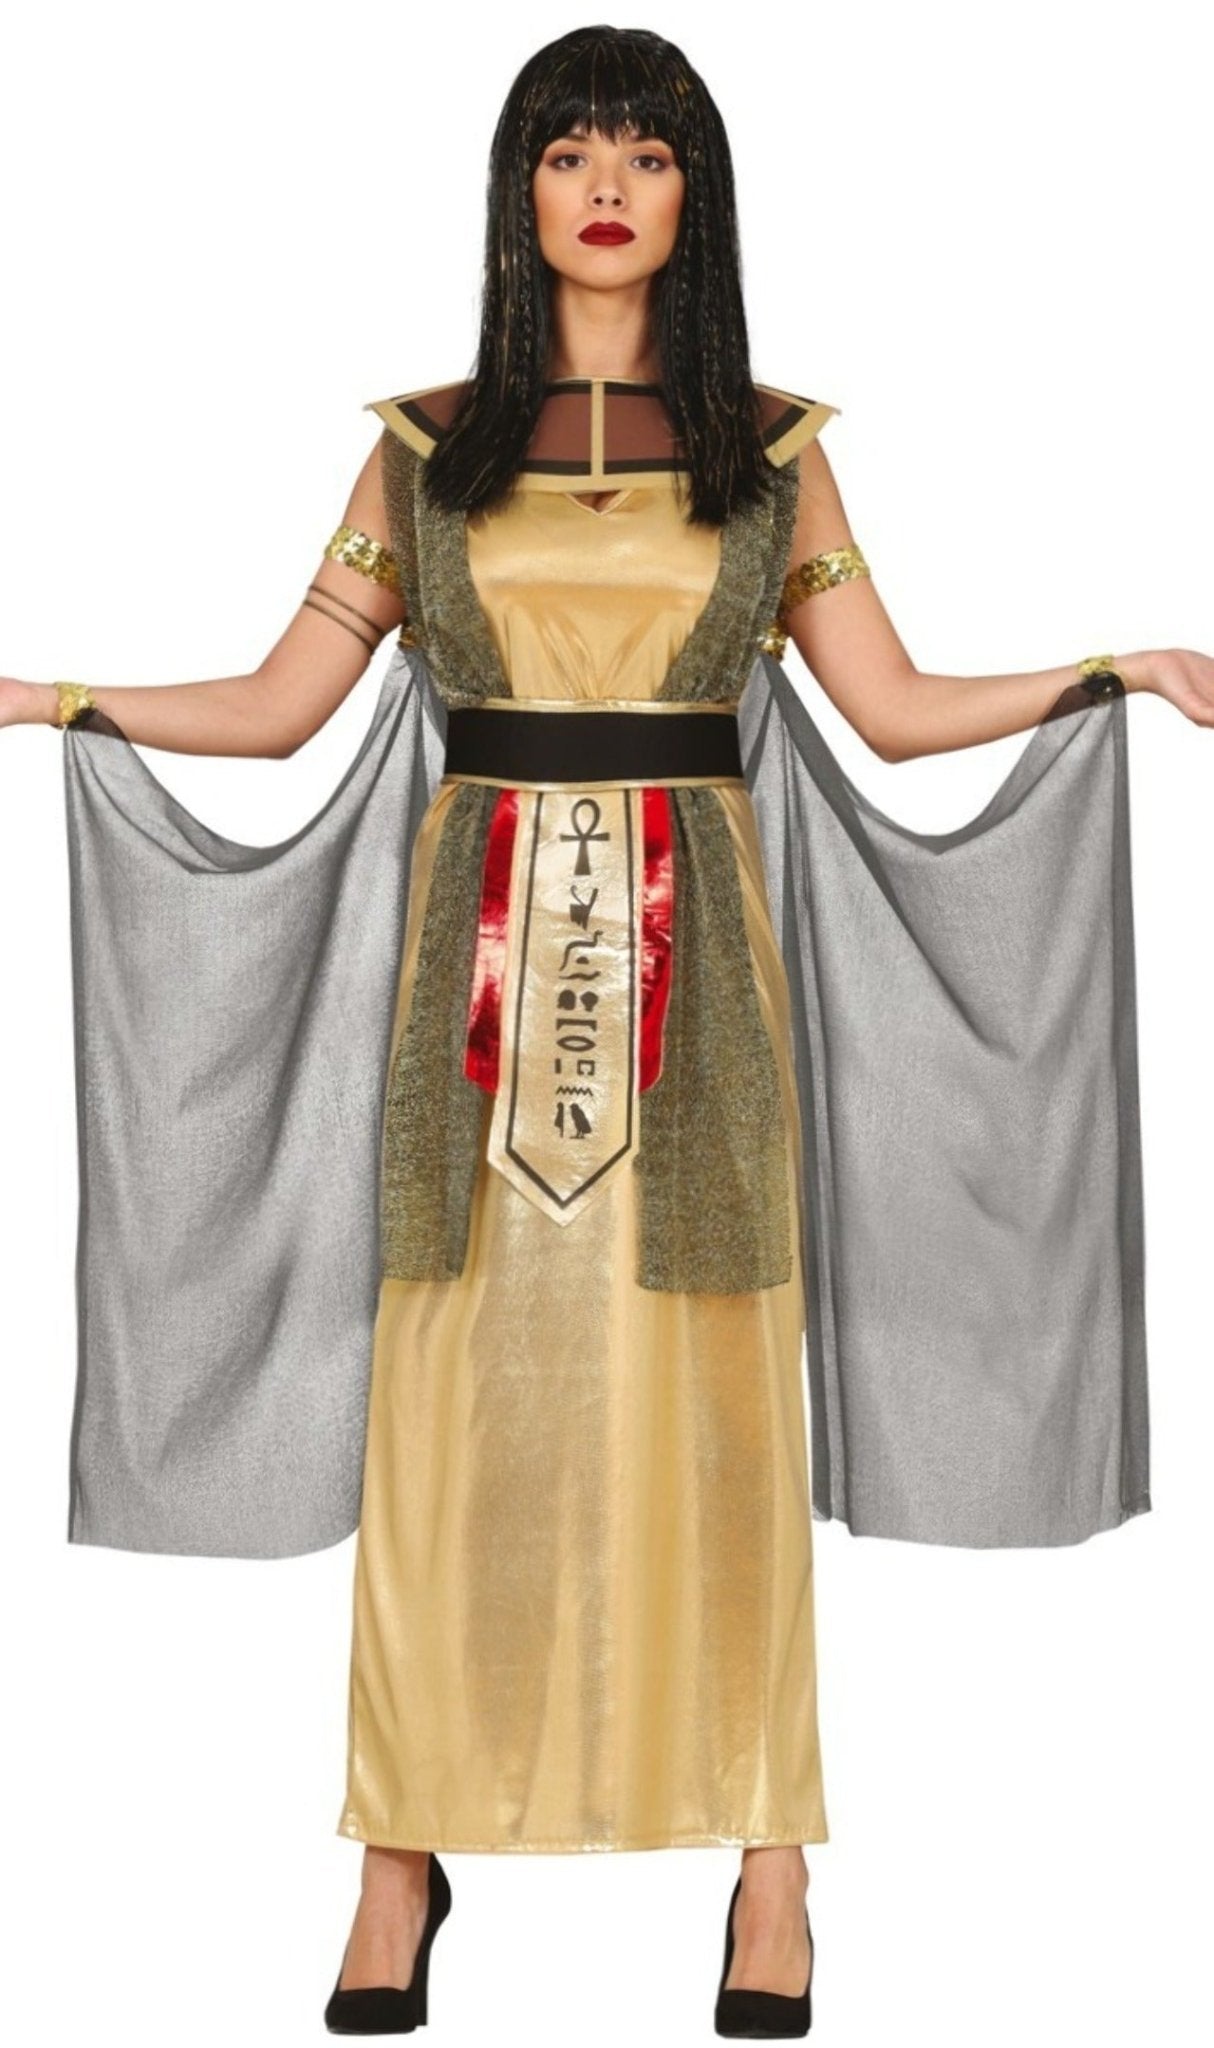 Costume e trucco da EGIZIANA/O fai da te - Costume, Trucco e Accessori